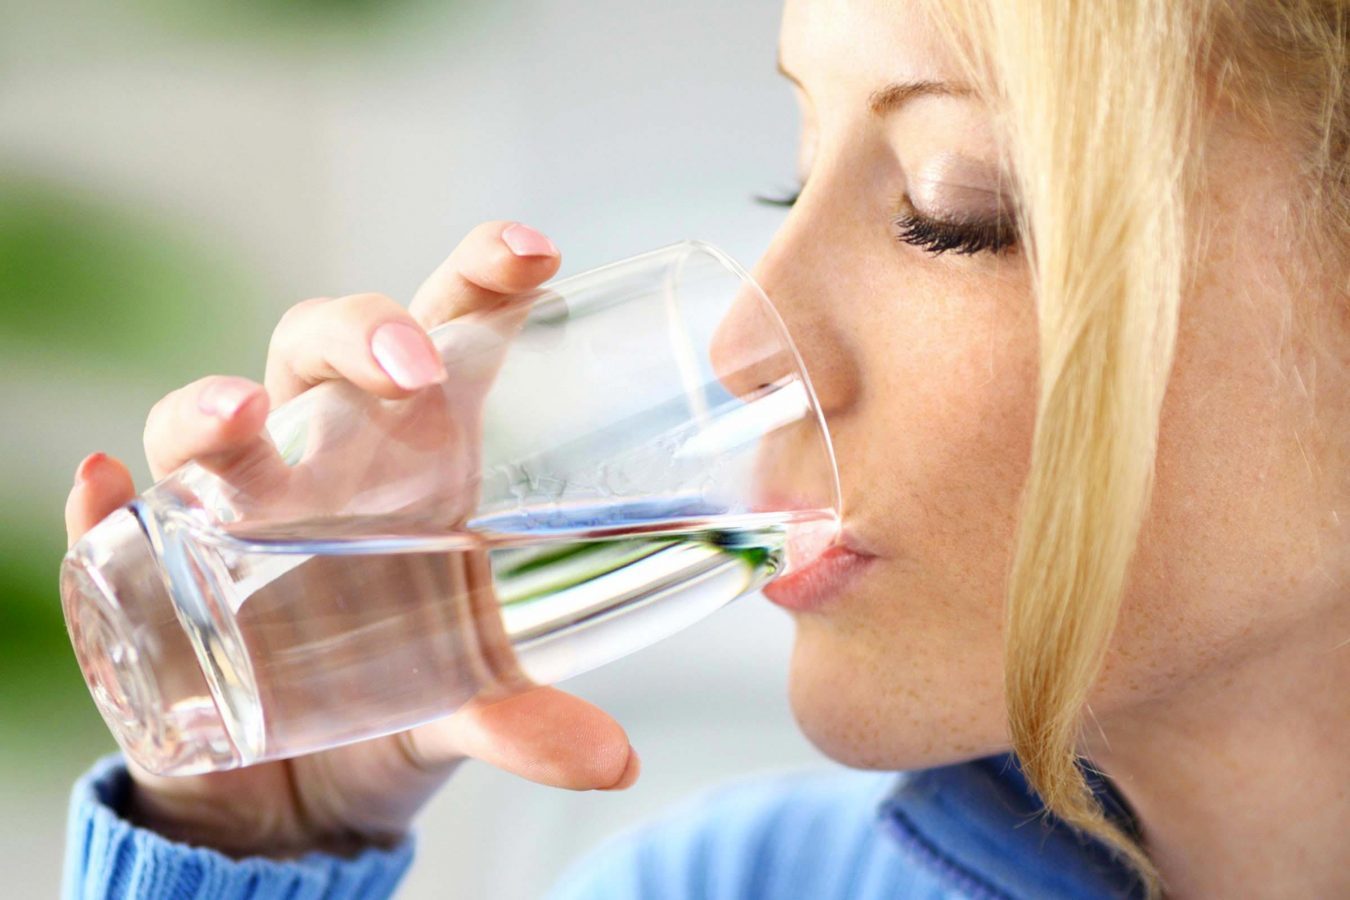 La soif peut être due à une maladie qui entraine une sécheresse de la bouche.